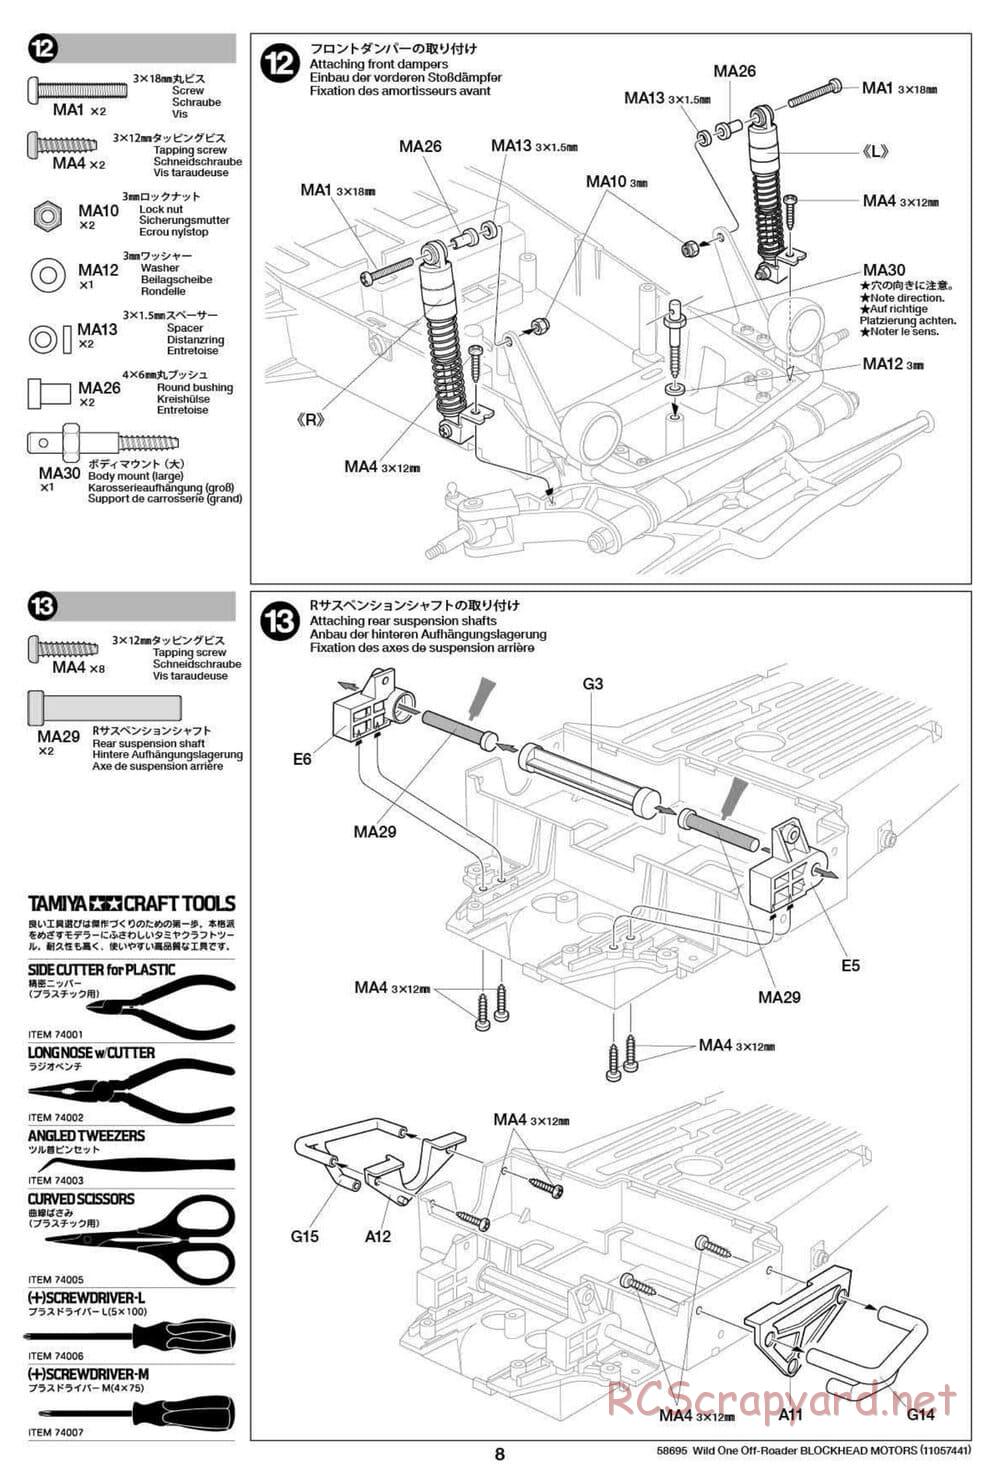 Tamiya - Wild One Off Roader Blockhead Motors - FAV Chassis - Manual - Page 8